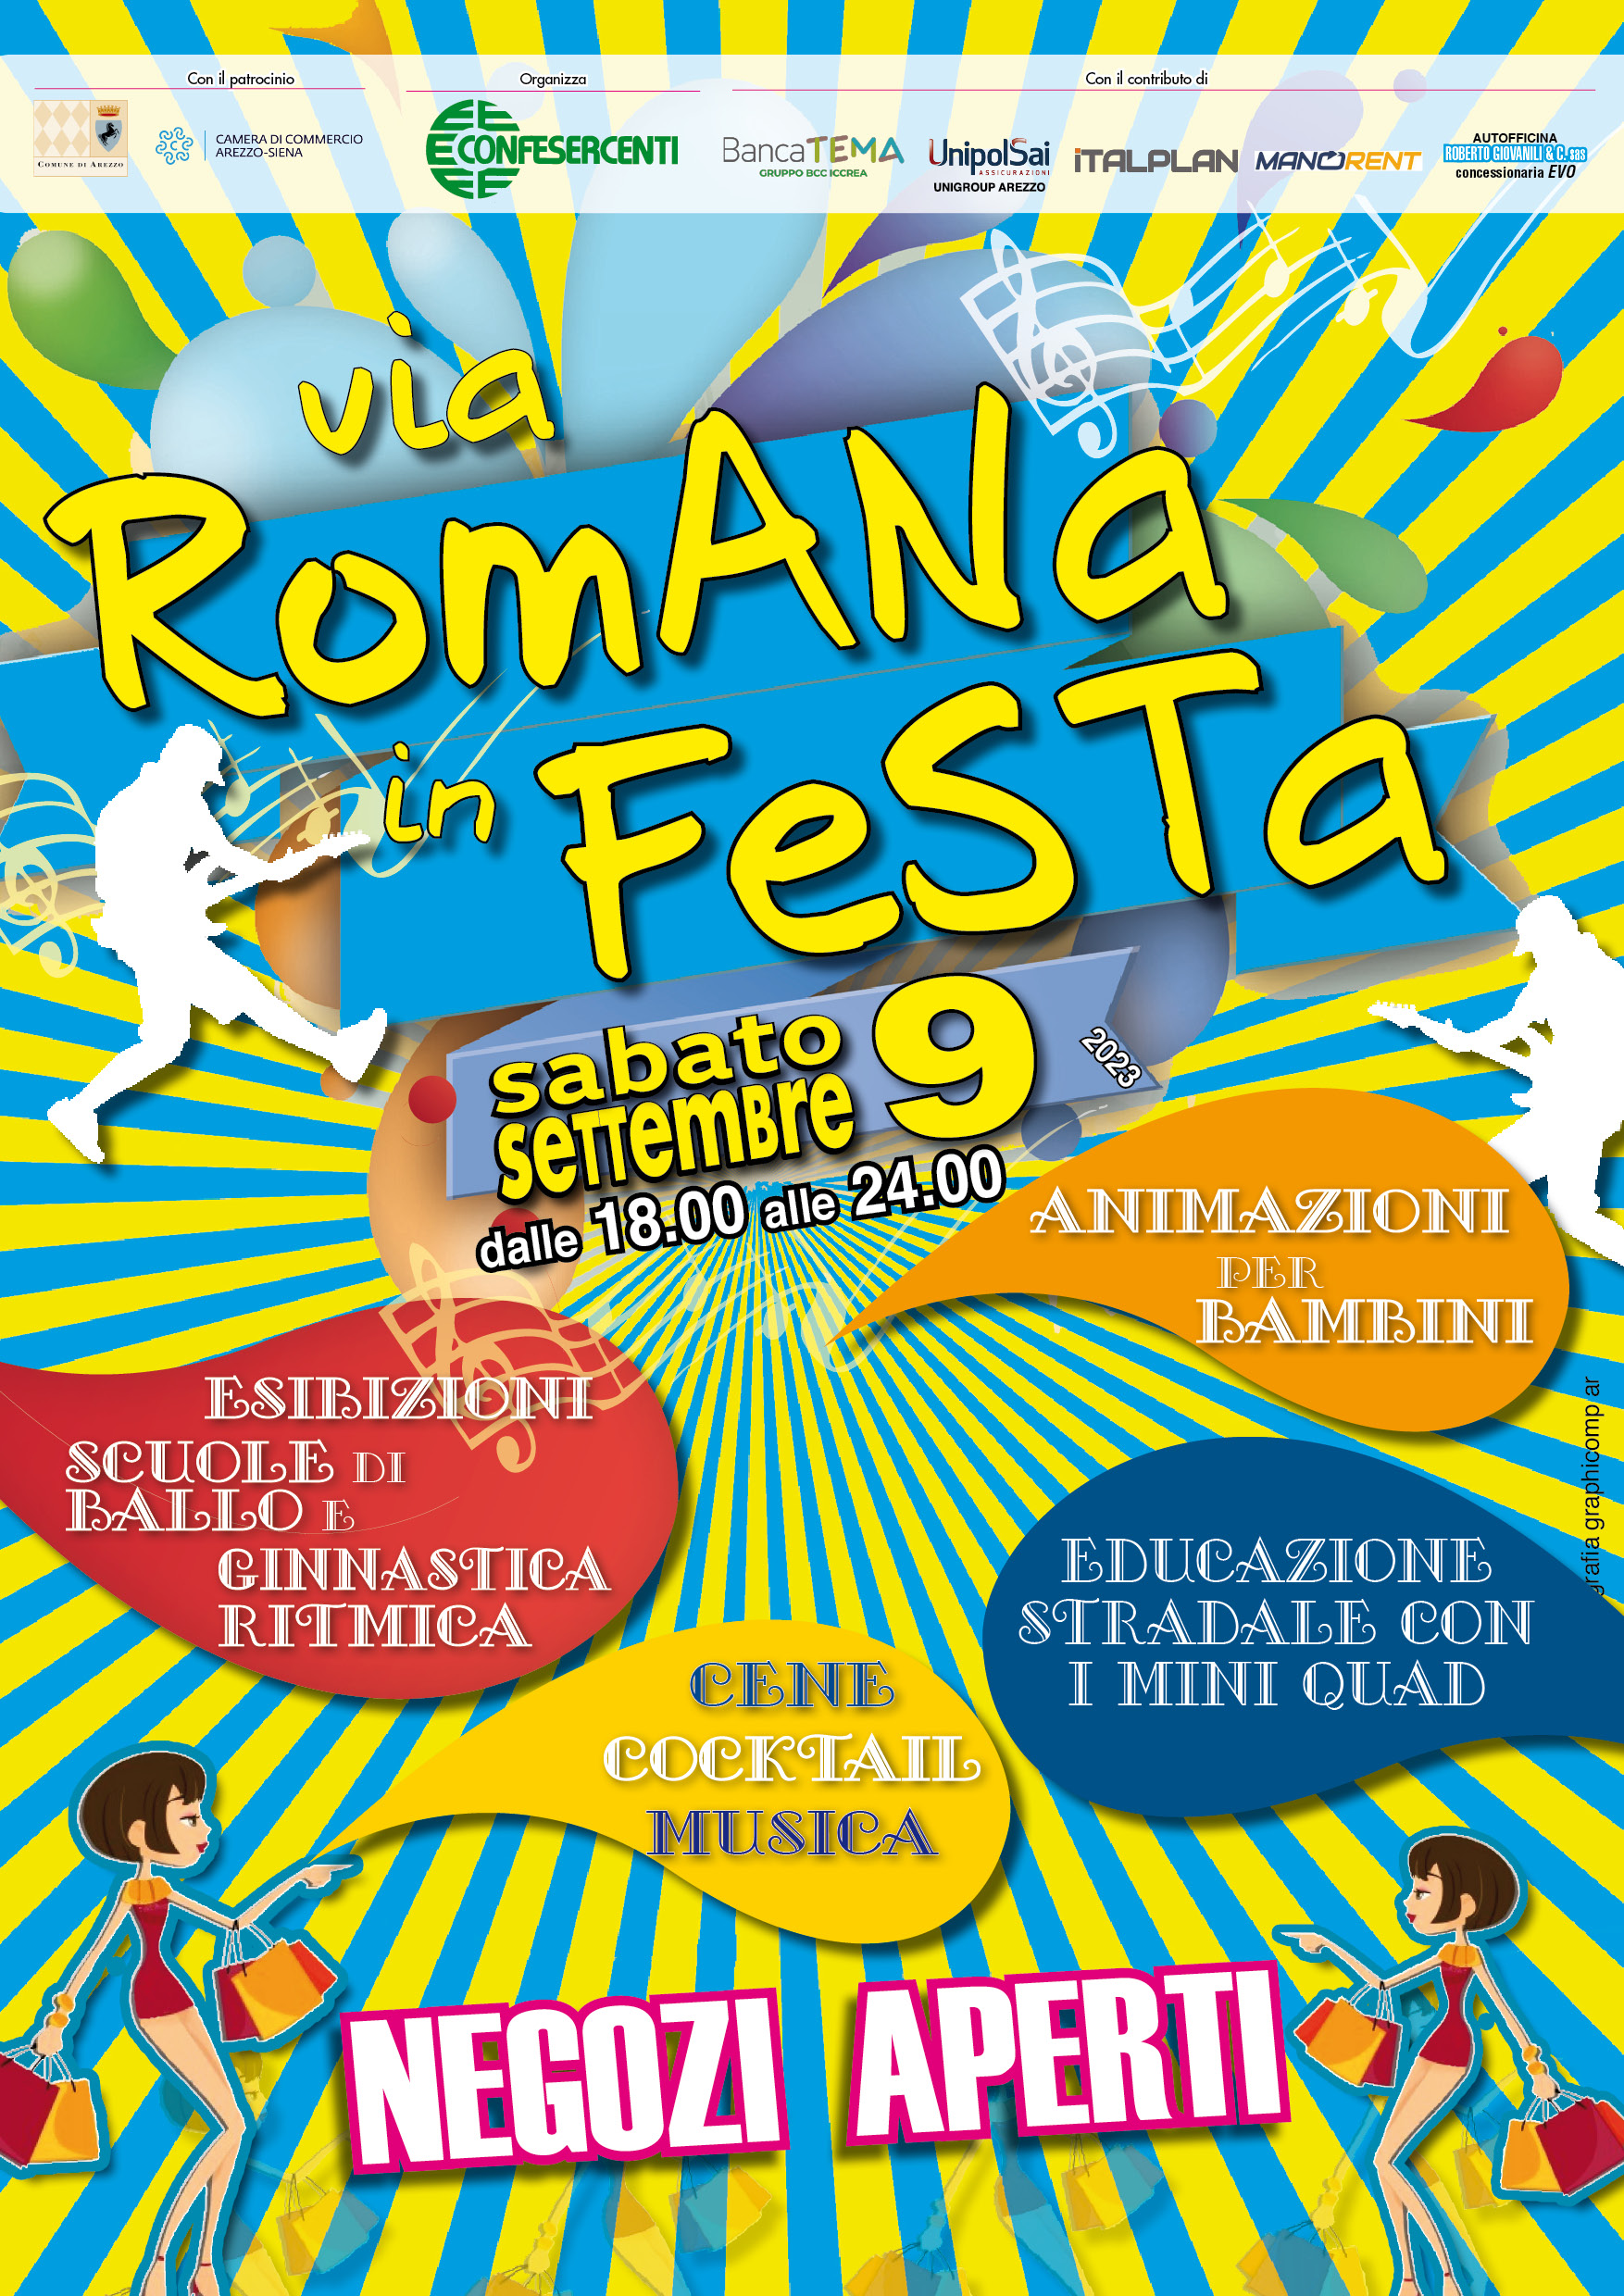 Arezzo: Confesercenti, “Via Romana in festa”, presentazione martedì 5 settembre ore 11